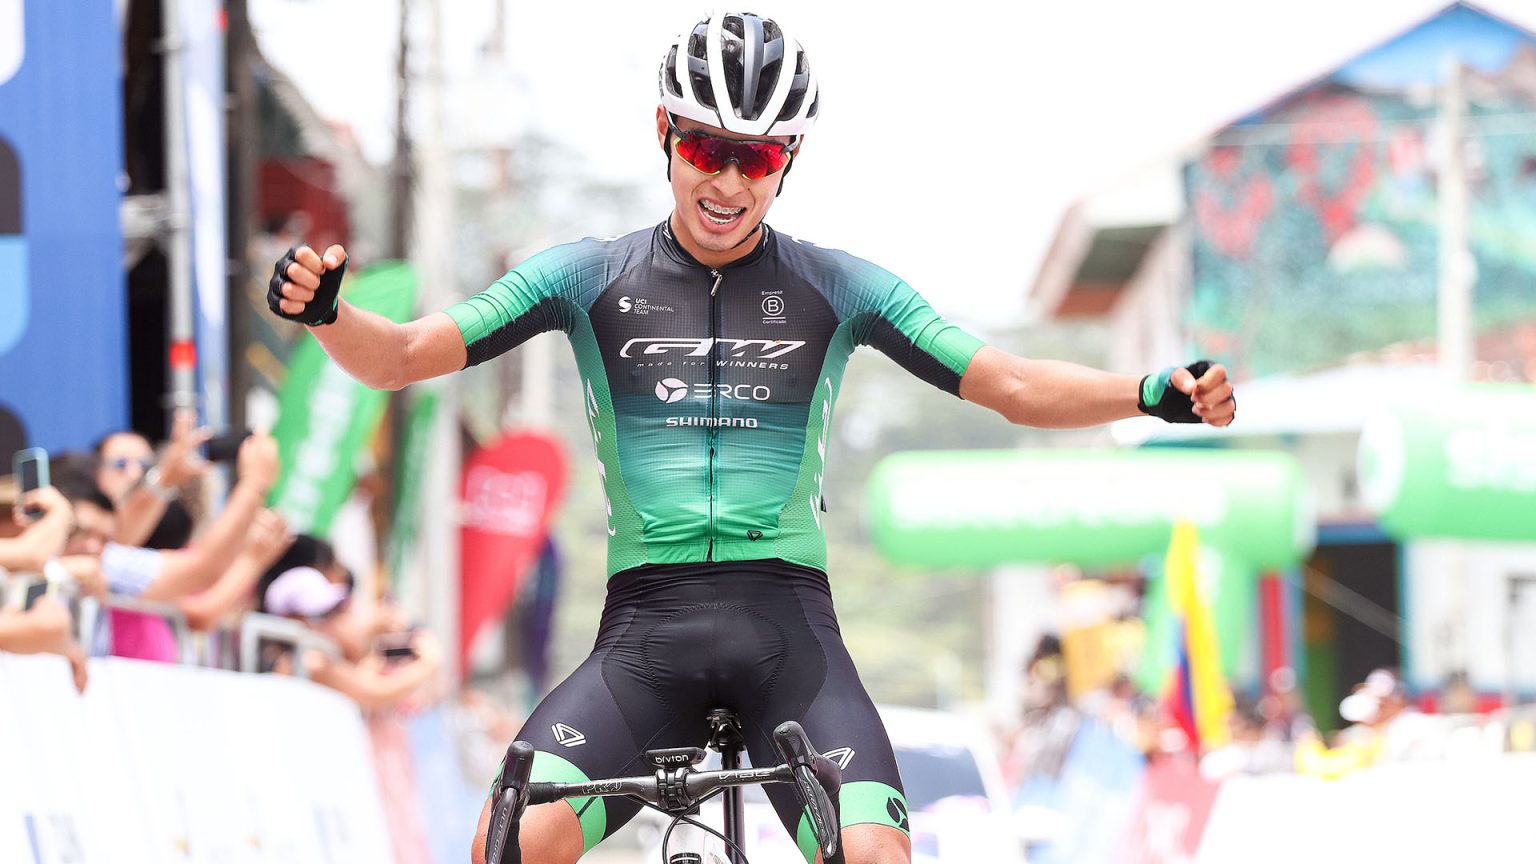 Diego Pescador: Victoria y liderazgo para el corredor del GW Erco Shimano en la segunda etapa de la Vuelta de la Juventud